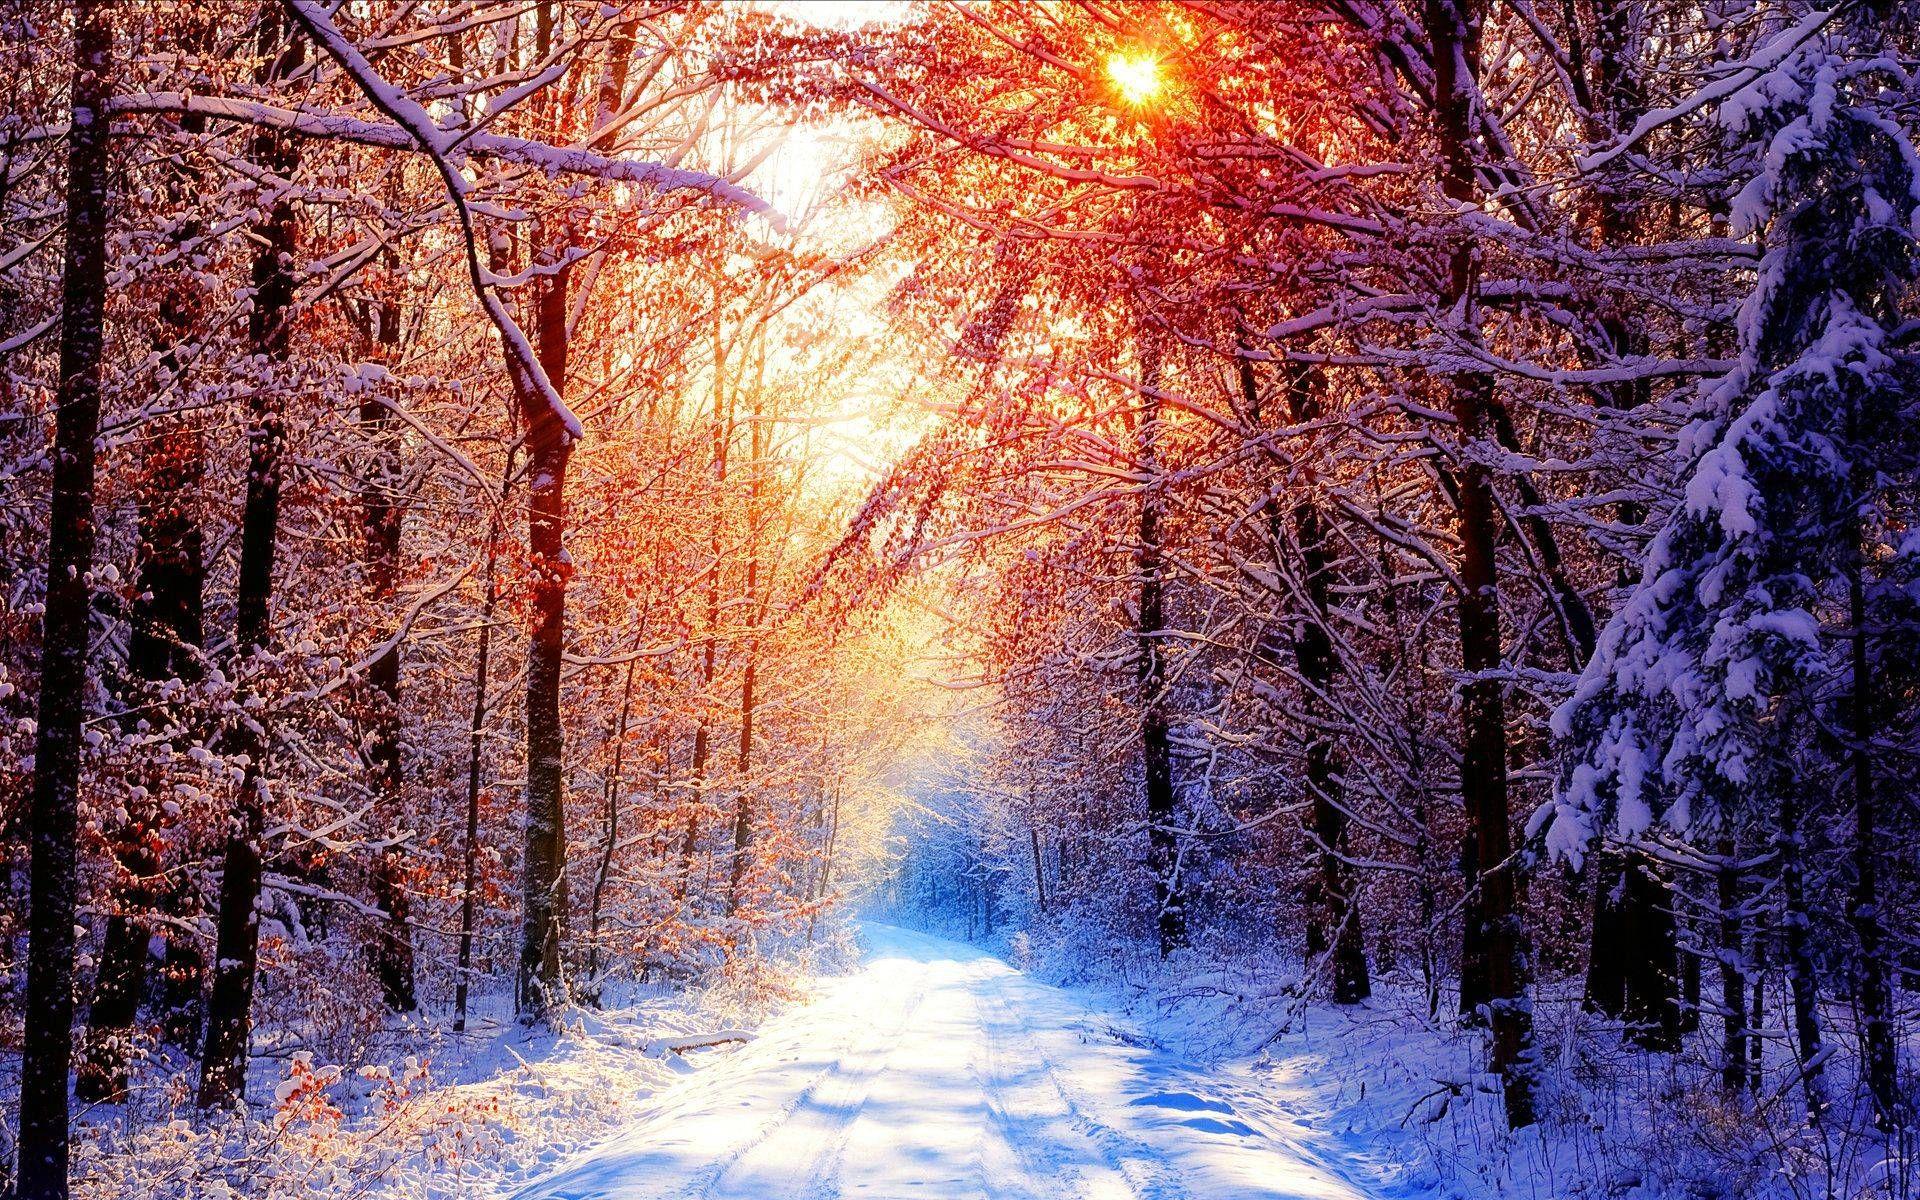 Early Winter Morning. Winter wallpaper desktop, Free winter